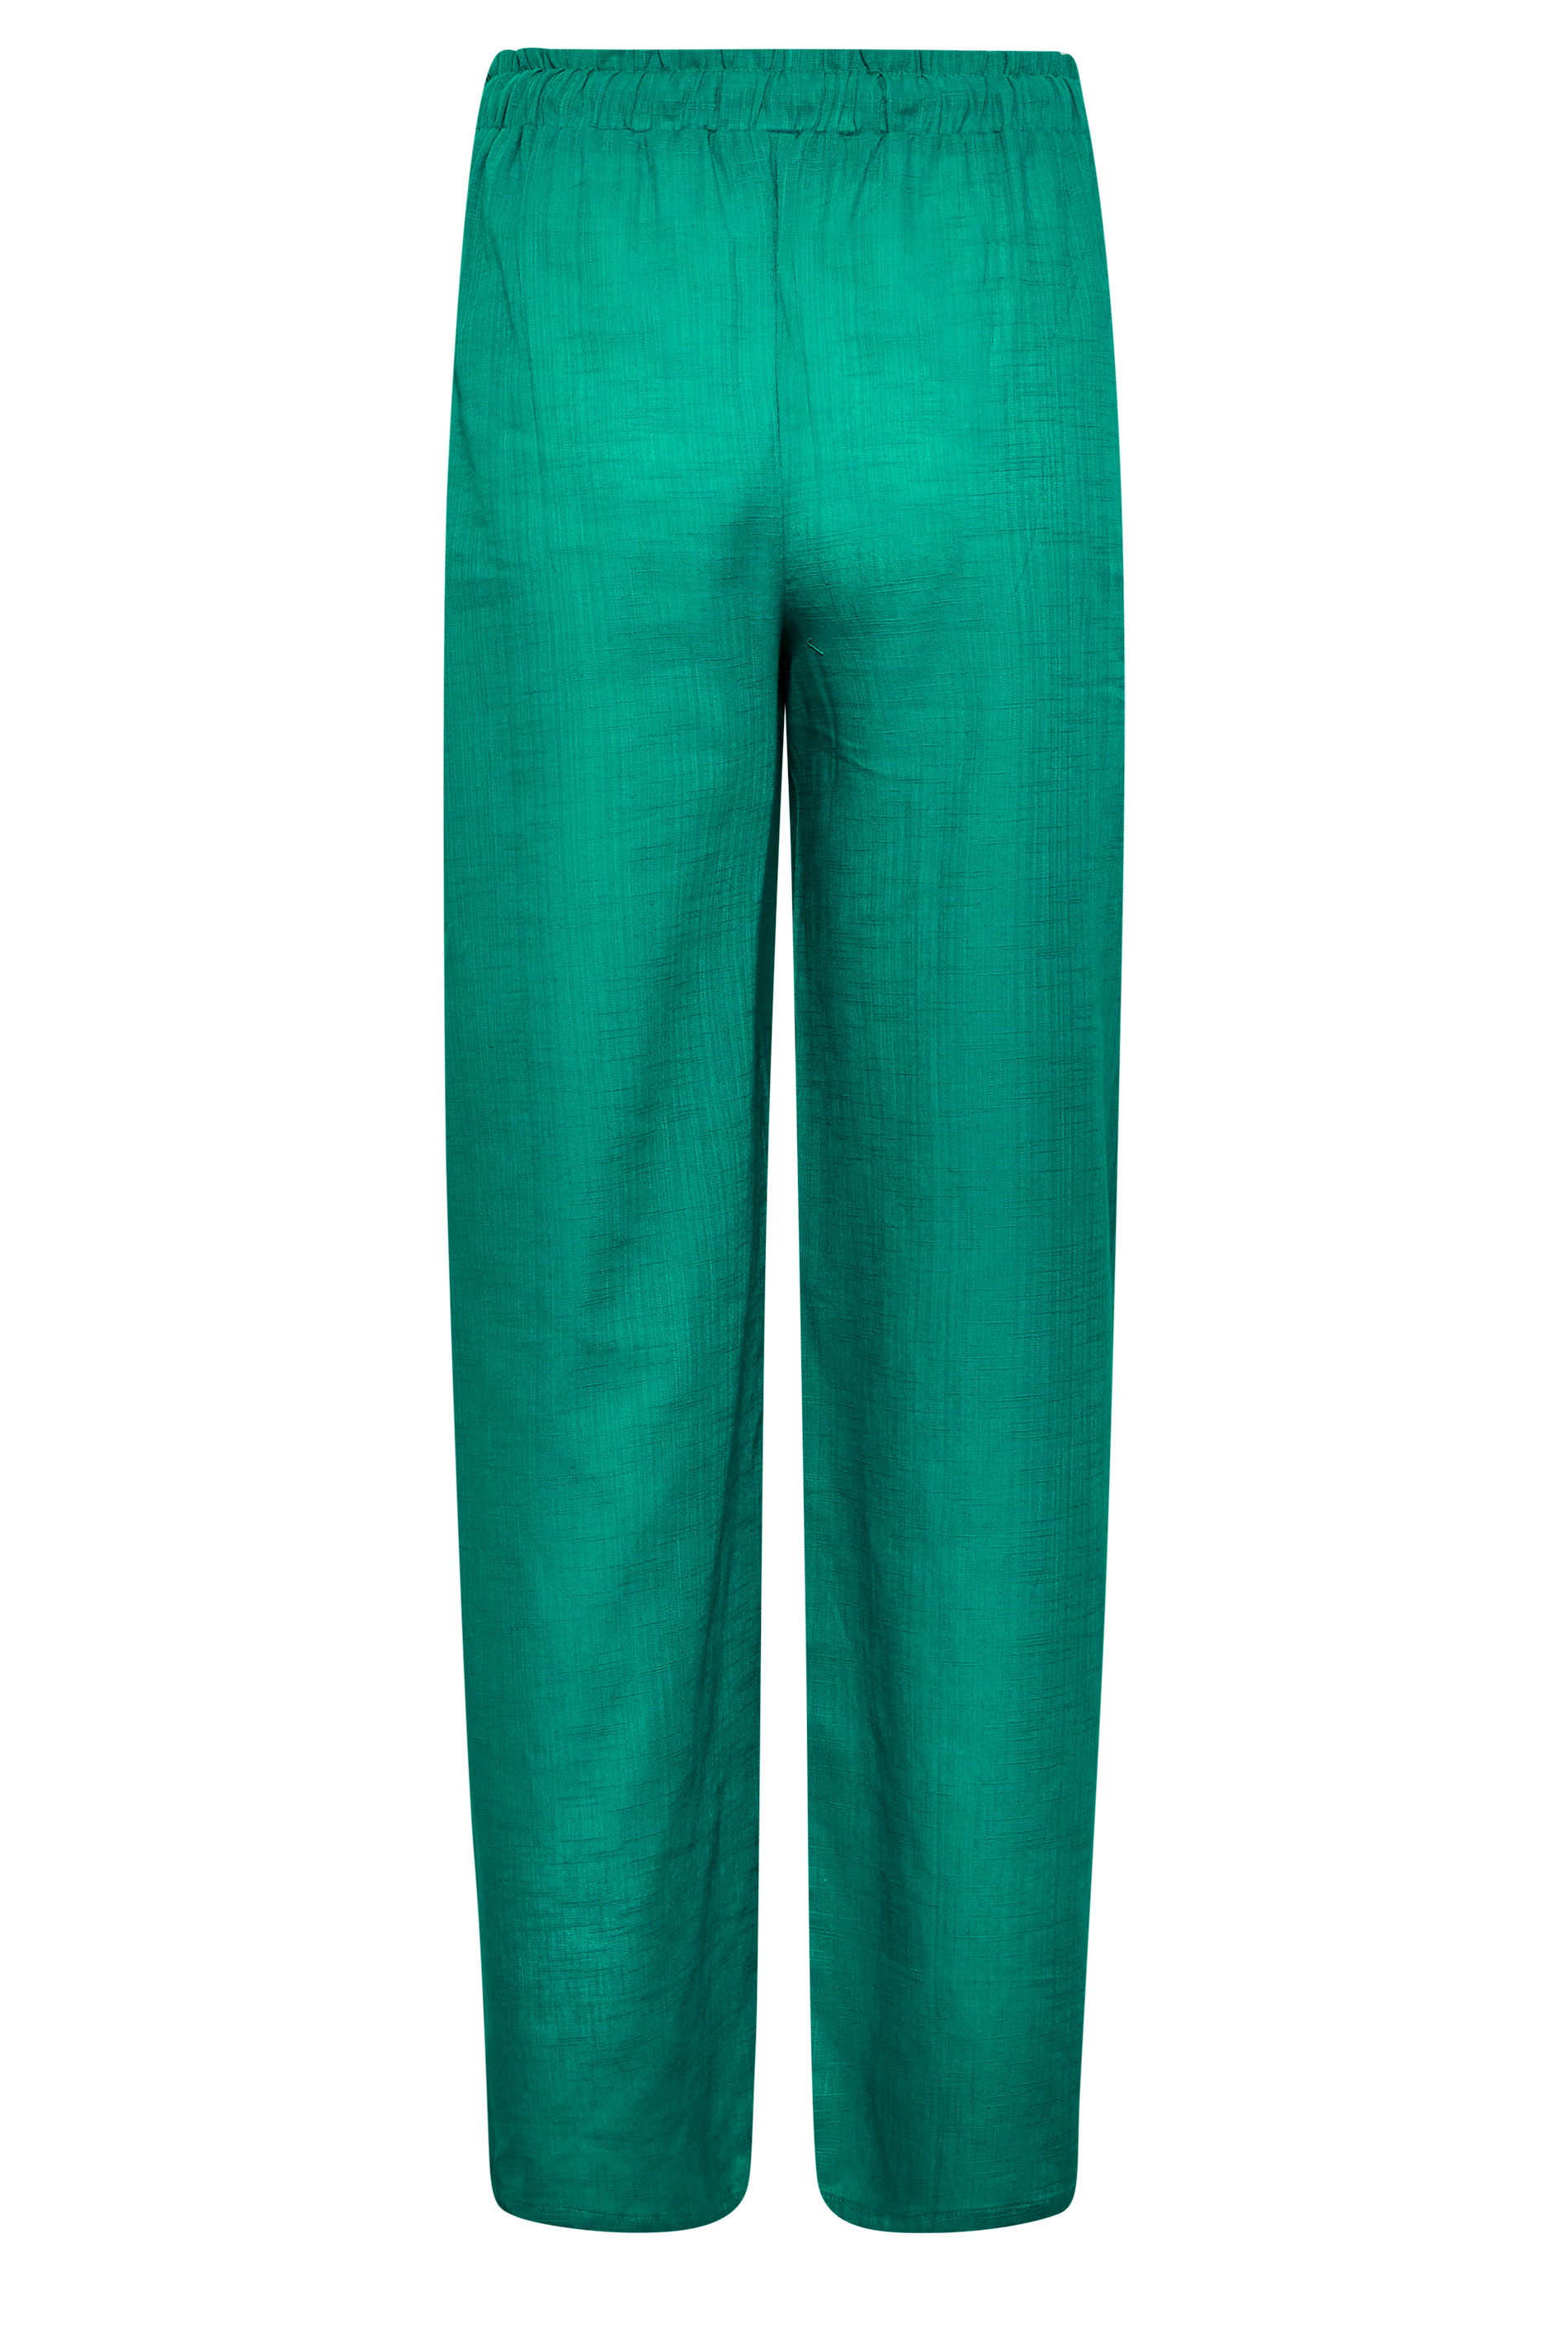 LTS Tall Women's Green Cotton Wide Leg Beach Trousers | Long Tall Sally 3